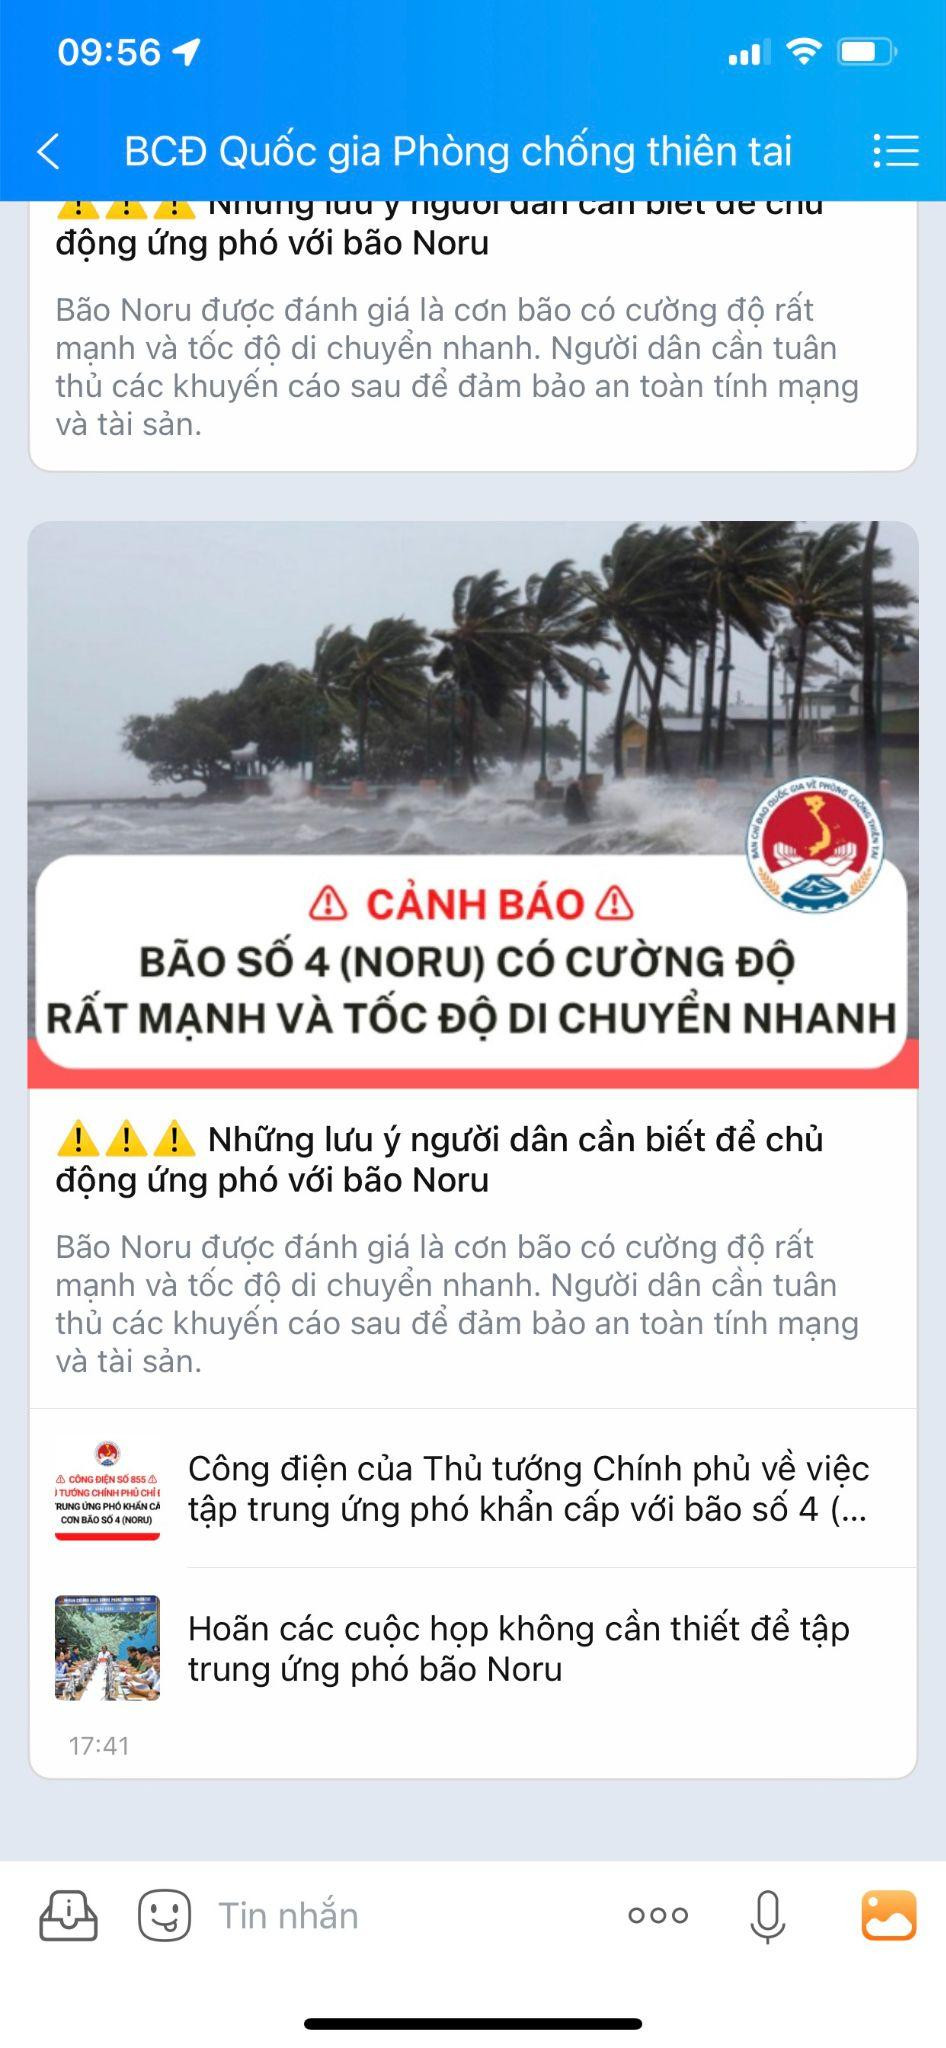 Theo dõi tin khẩn về bão Noru qua tài khoản Zalo chính thức của các tỉnh miền Trung - Ảnh 1.